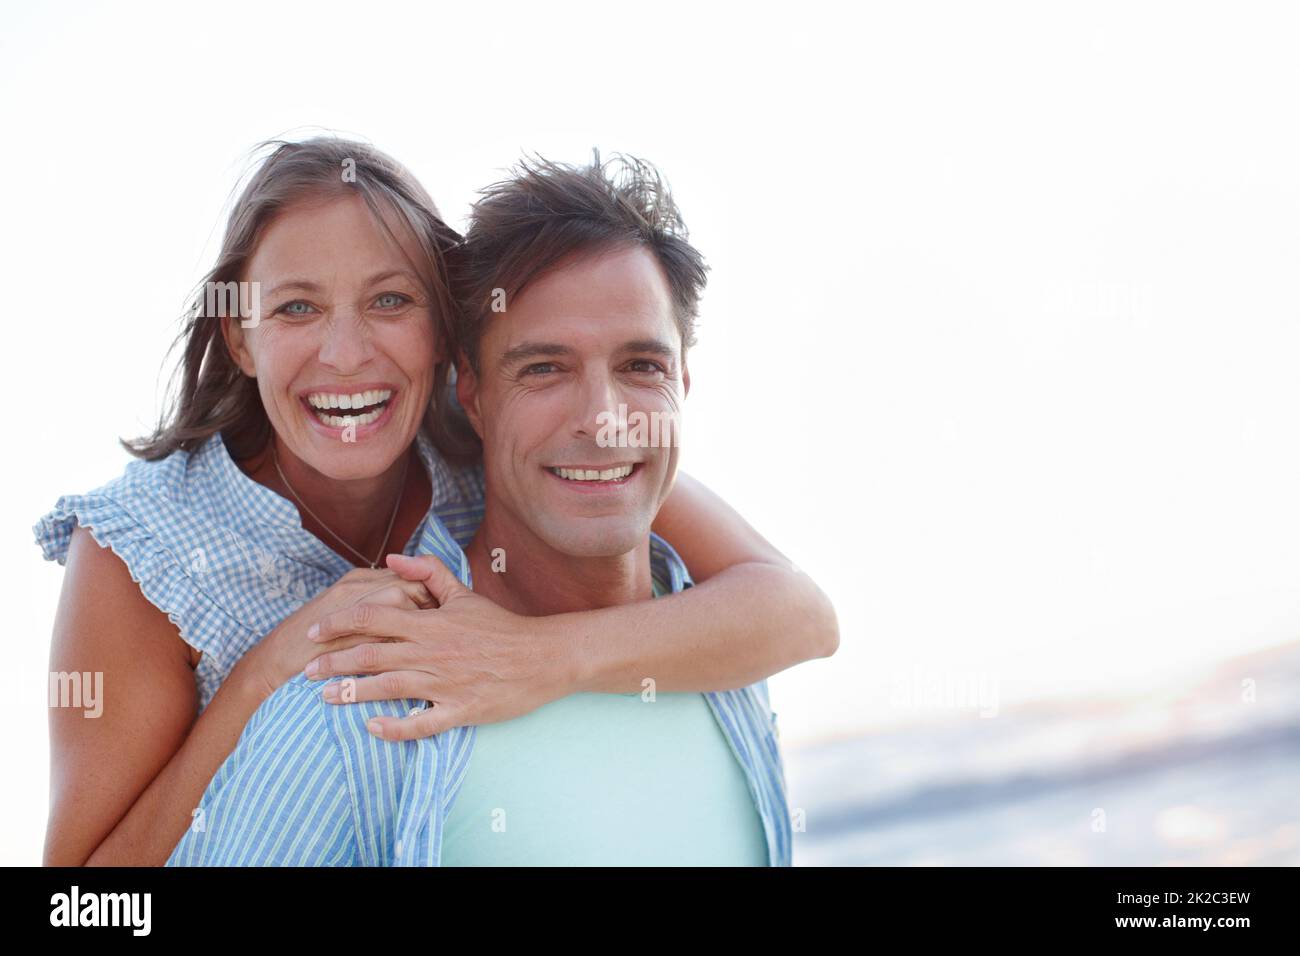 Devozione e felicità. Una coppia matura e beata che abbraccia il copyspace sulla spiaggia. Foto Stock